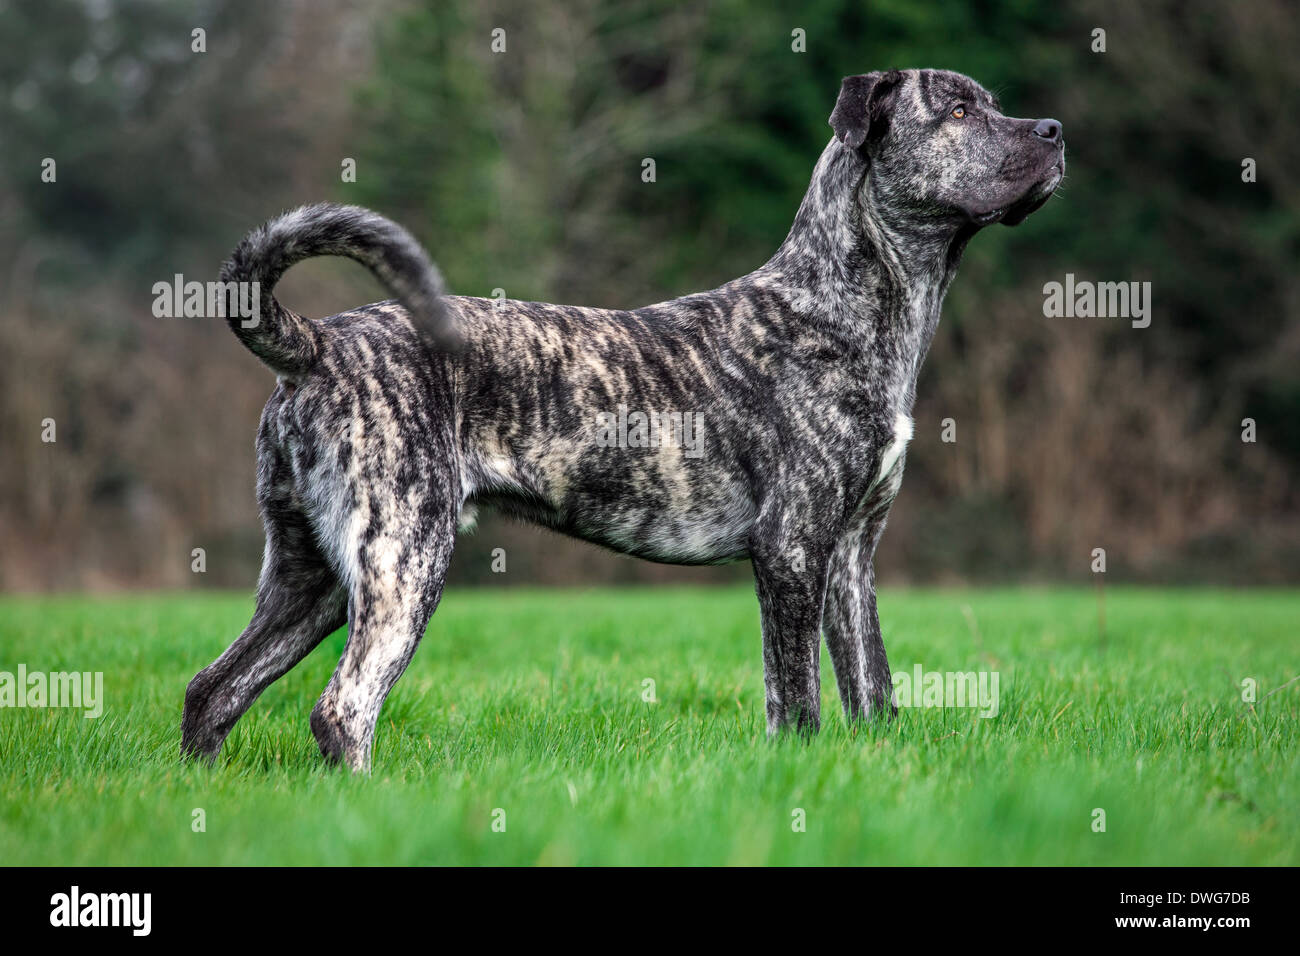 Cane Corso english, italiano cane di razza in giardino Foto Stock